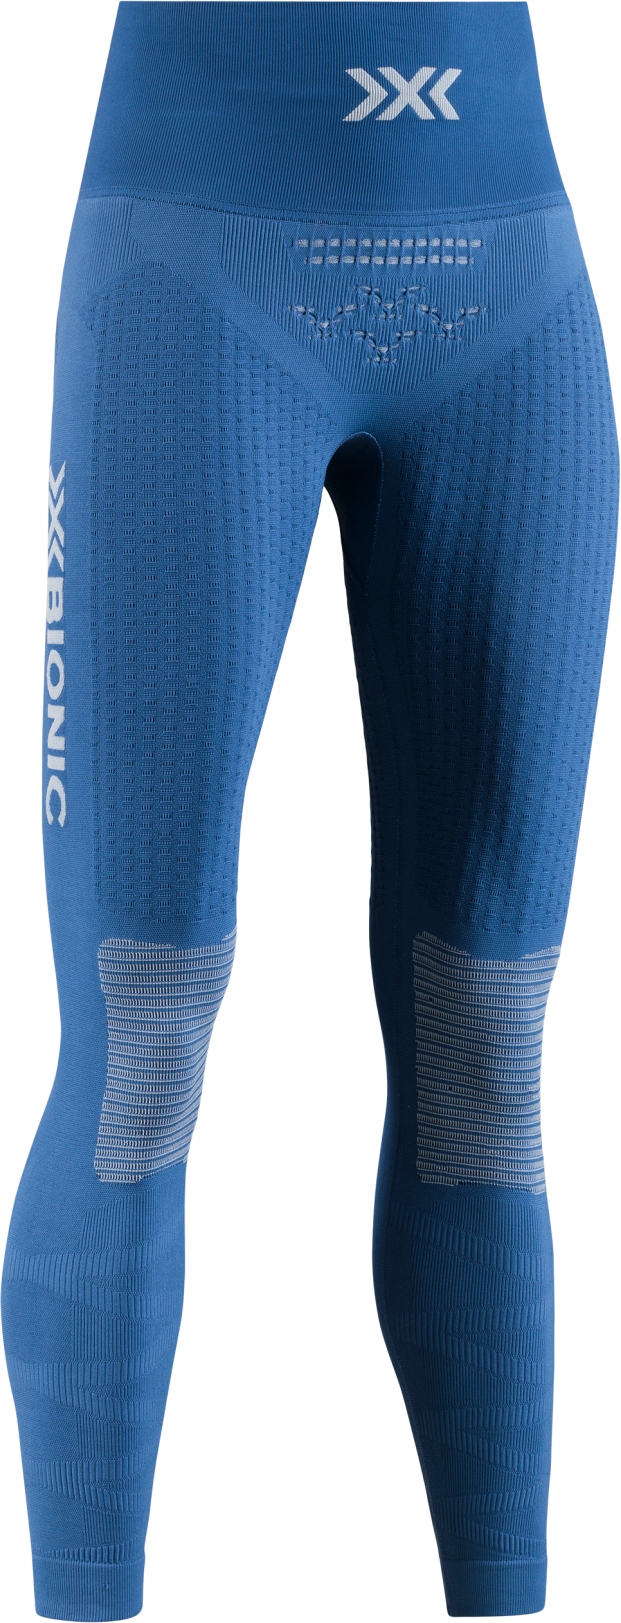 Produktbild von X-Bionic Energizer 4.0 7/8 Fitnesshose Damen - jeans blue/pearl beige